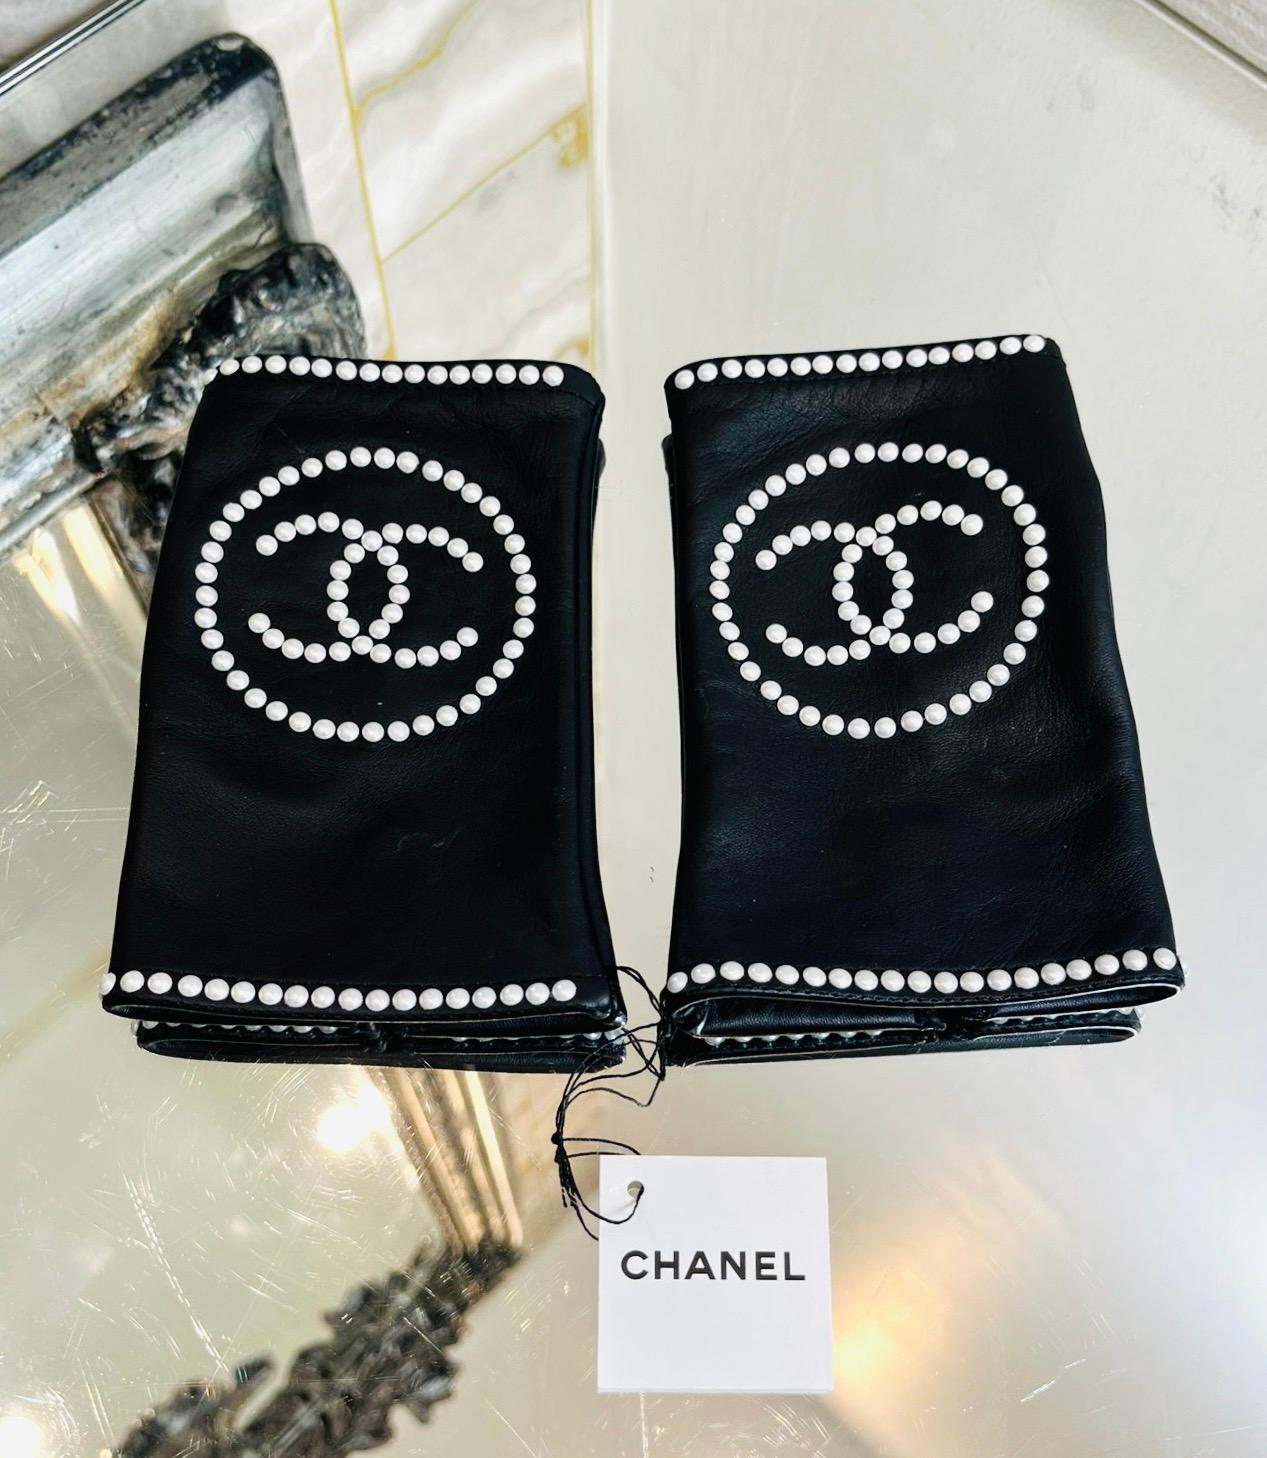 Brandneu - Chanel 'CC' Logo Leder & Perlen Fingerlose Handschuhe

Glatte, schwarze Handschuhe mit weißem 